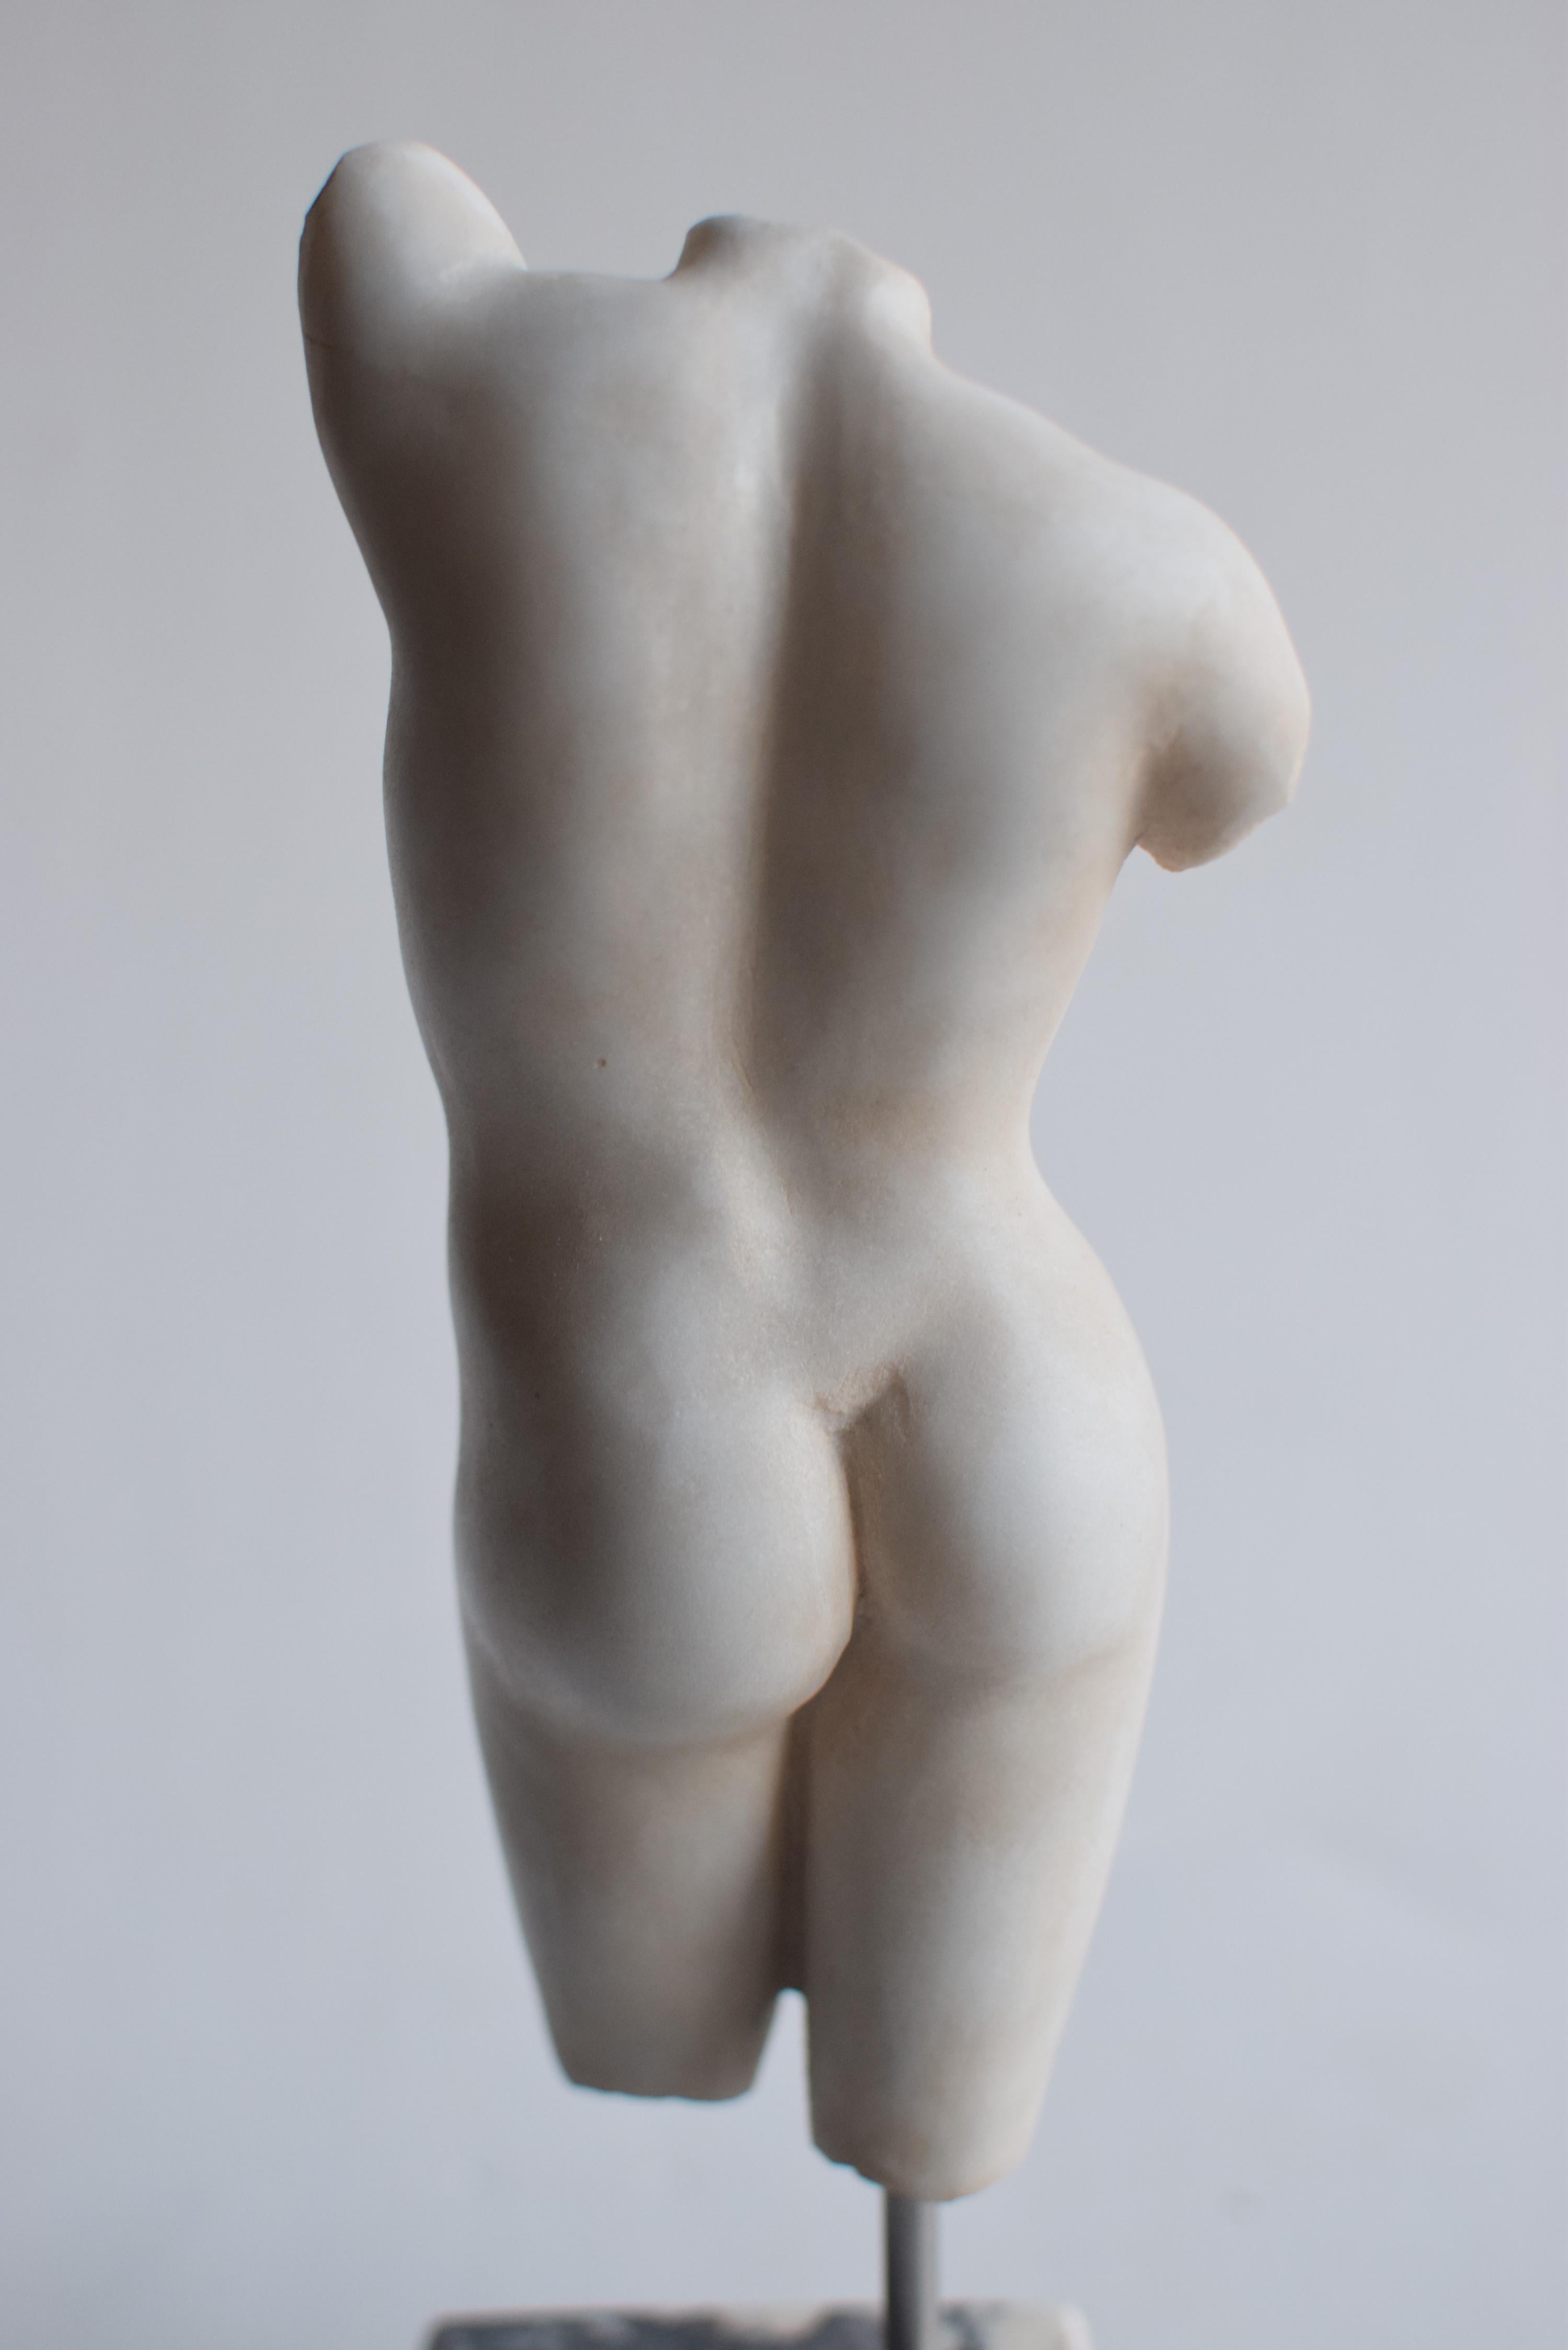 Italian Torso femminile scolpito su marmo bianco Carrara - miniatura -made in Italy For Sale